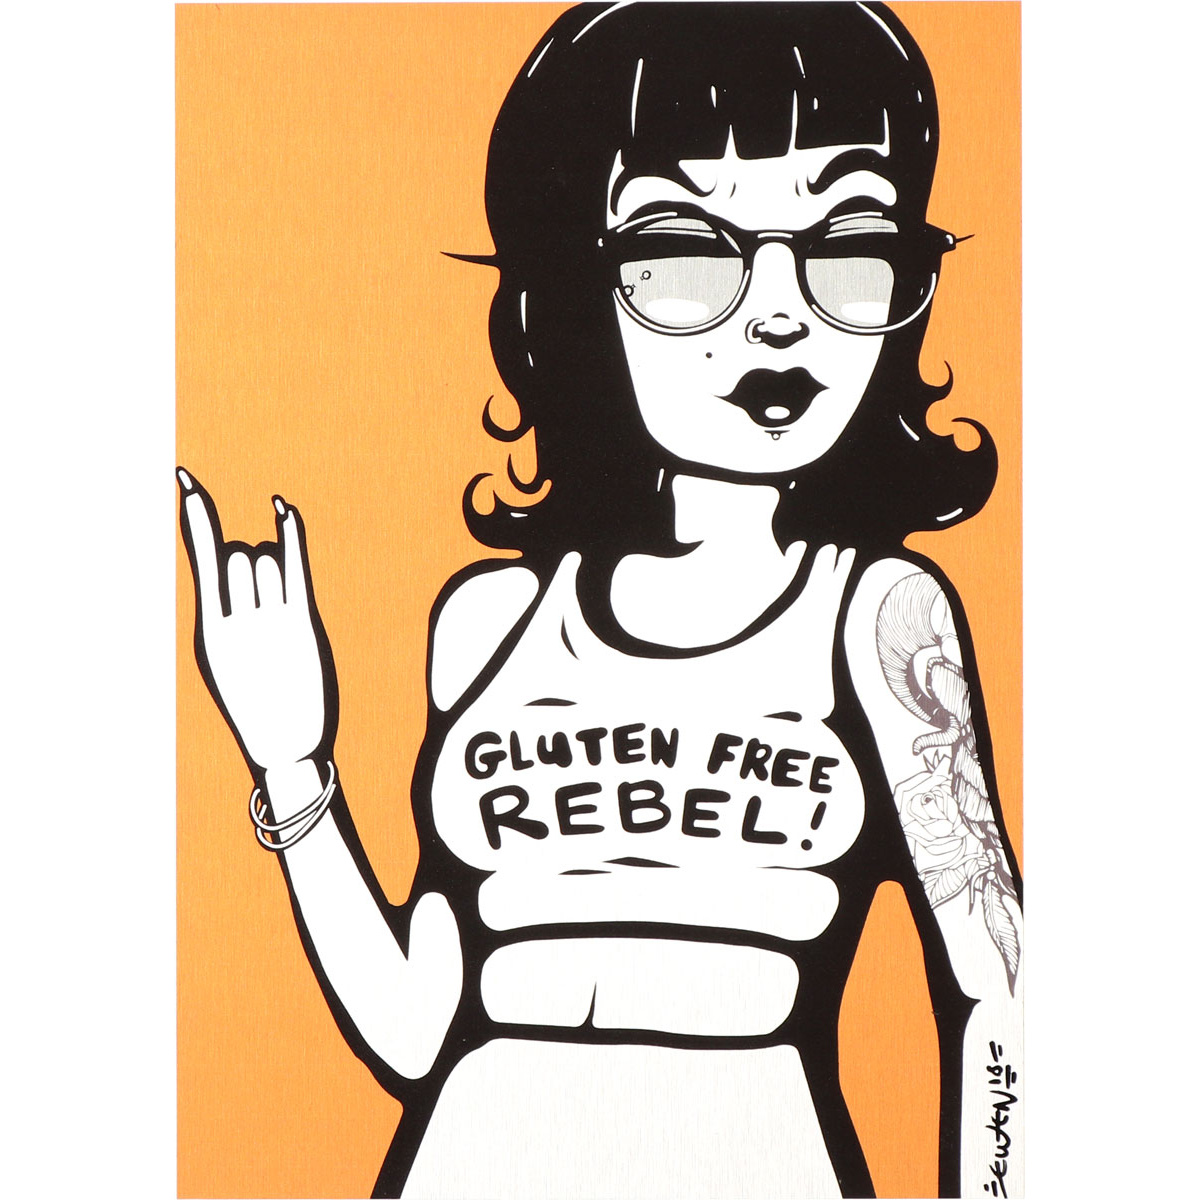 Gluten Free Rebel by Ewen Gur